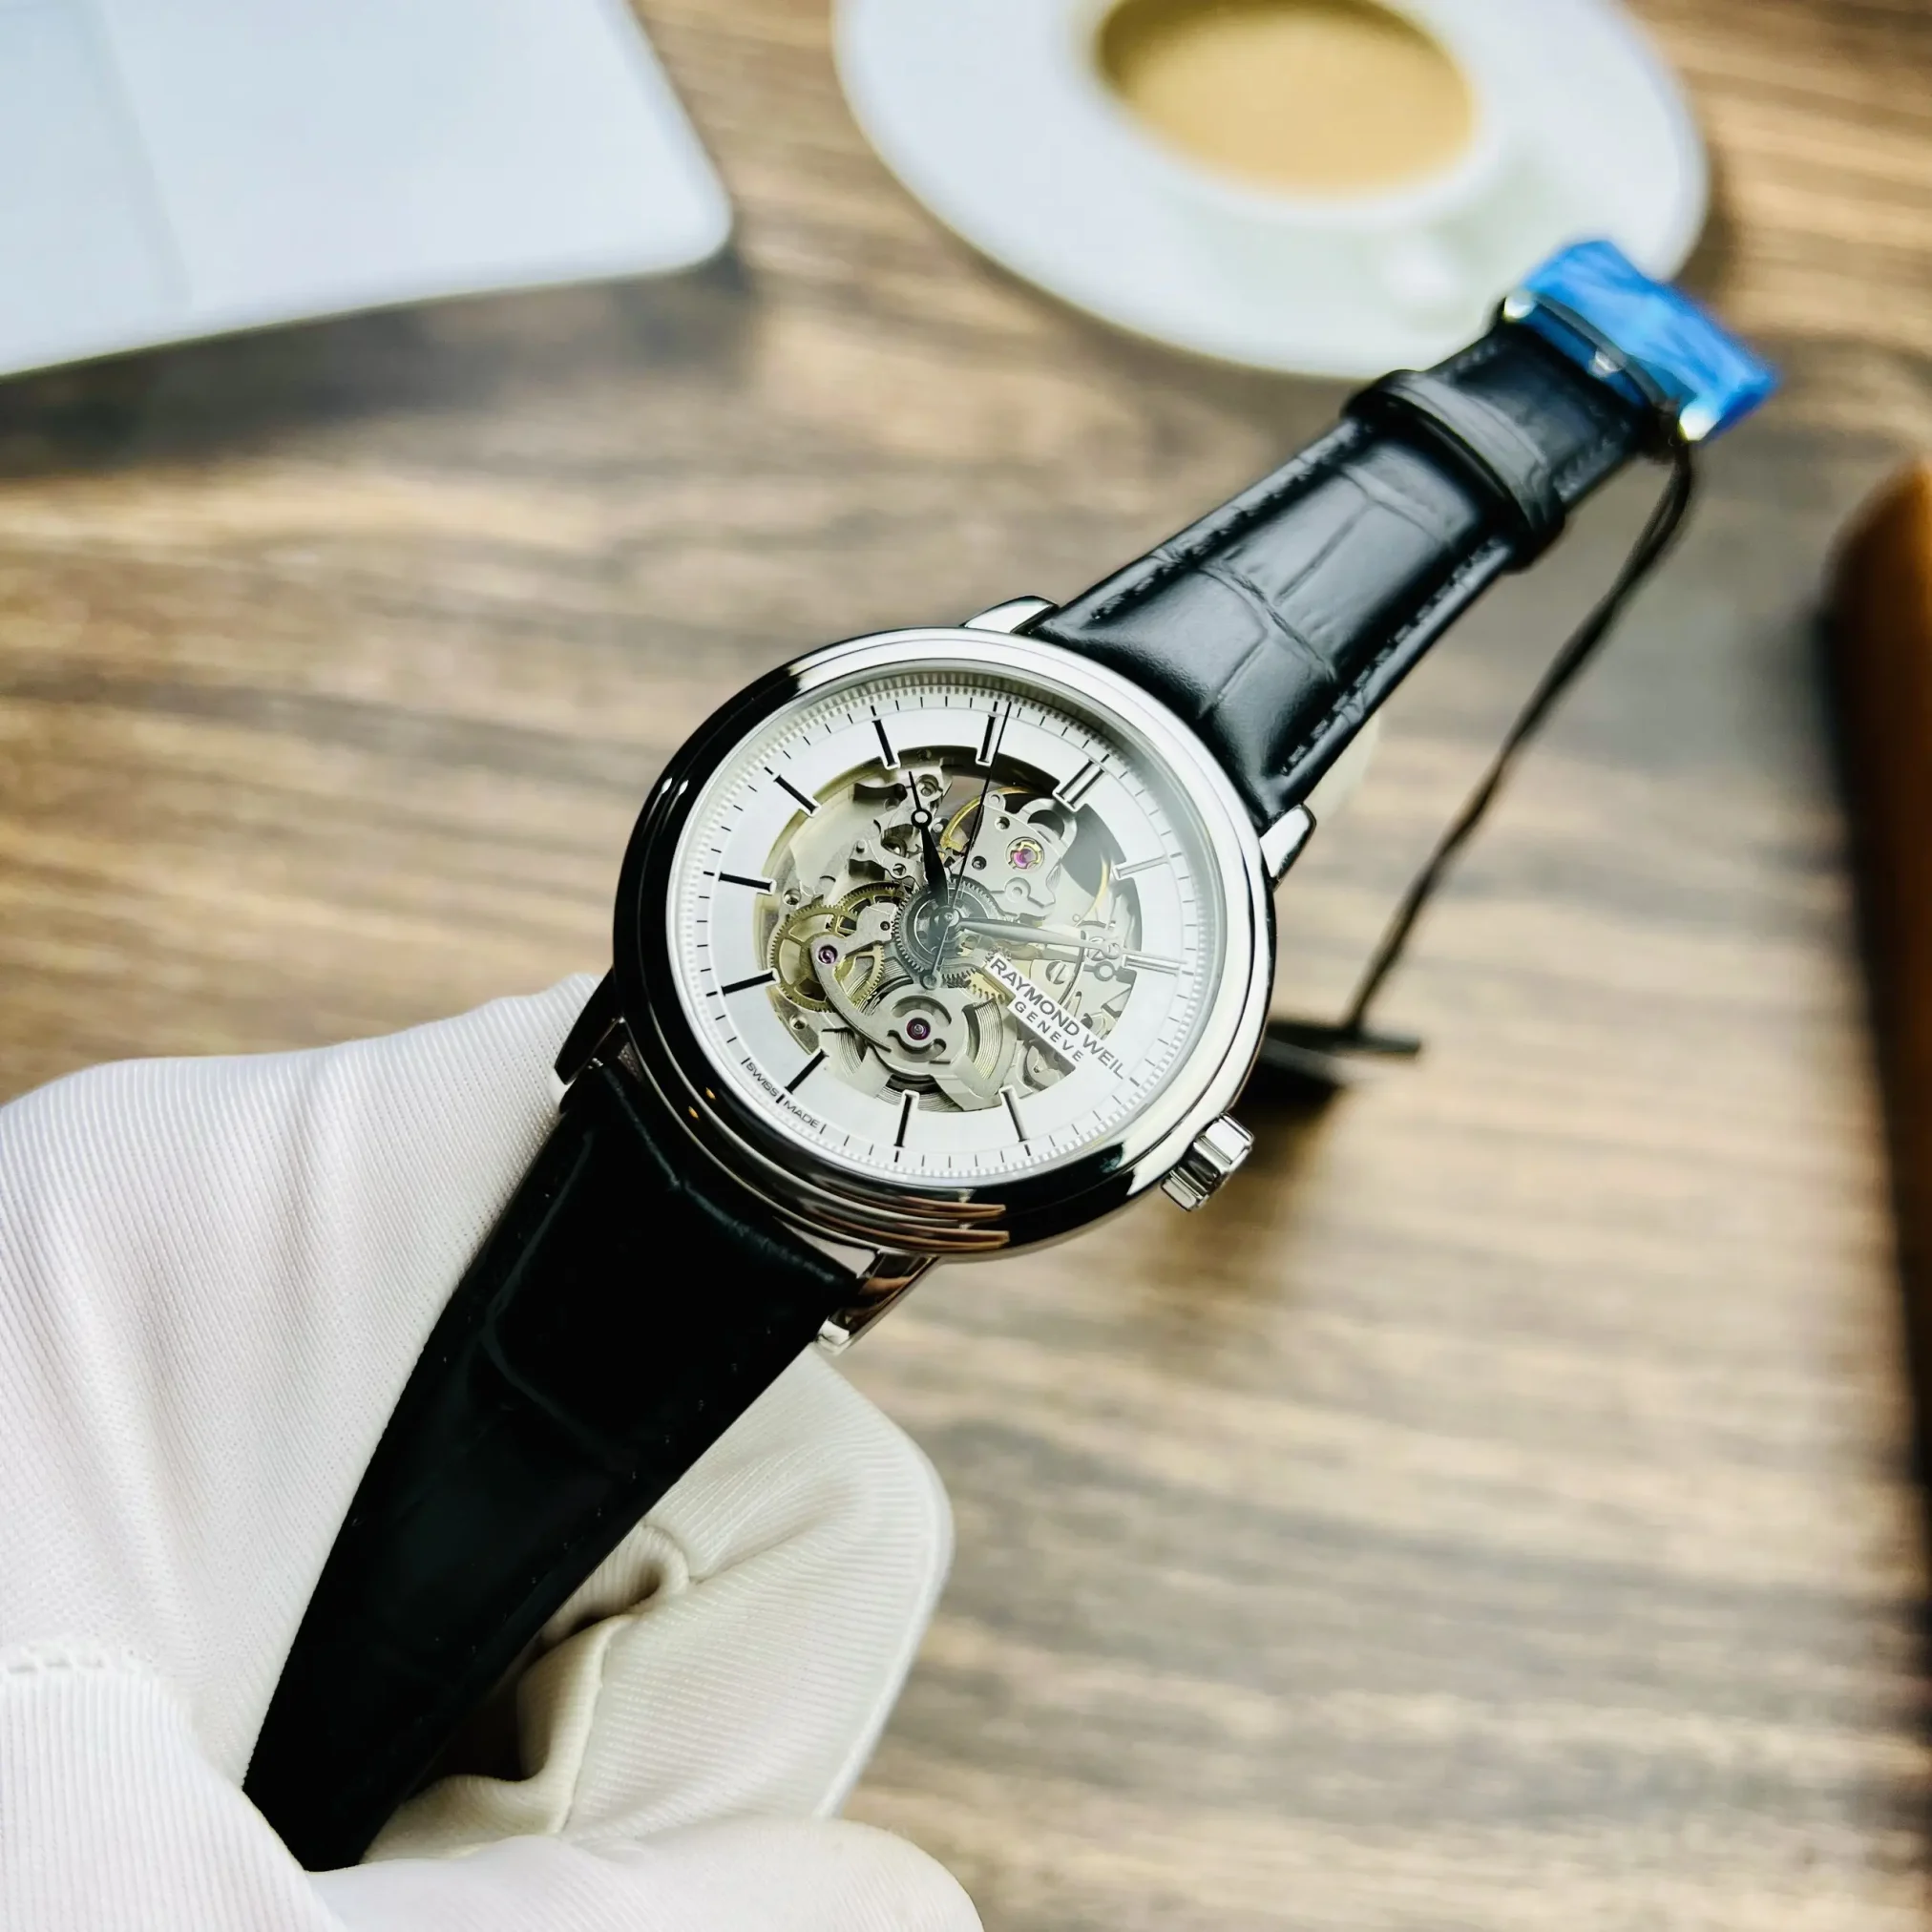 Đồng hồ Raymond Weil Maestro 2815-STC-65001 mặt số màu trắng. Thiết kế lộ cơ. Dây đeo bằng da. Thân vỏ bằng thép.